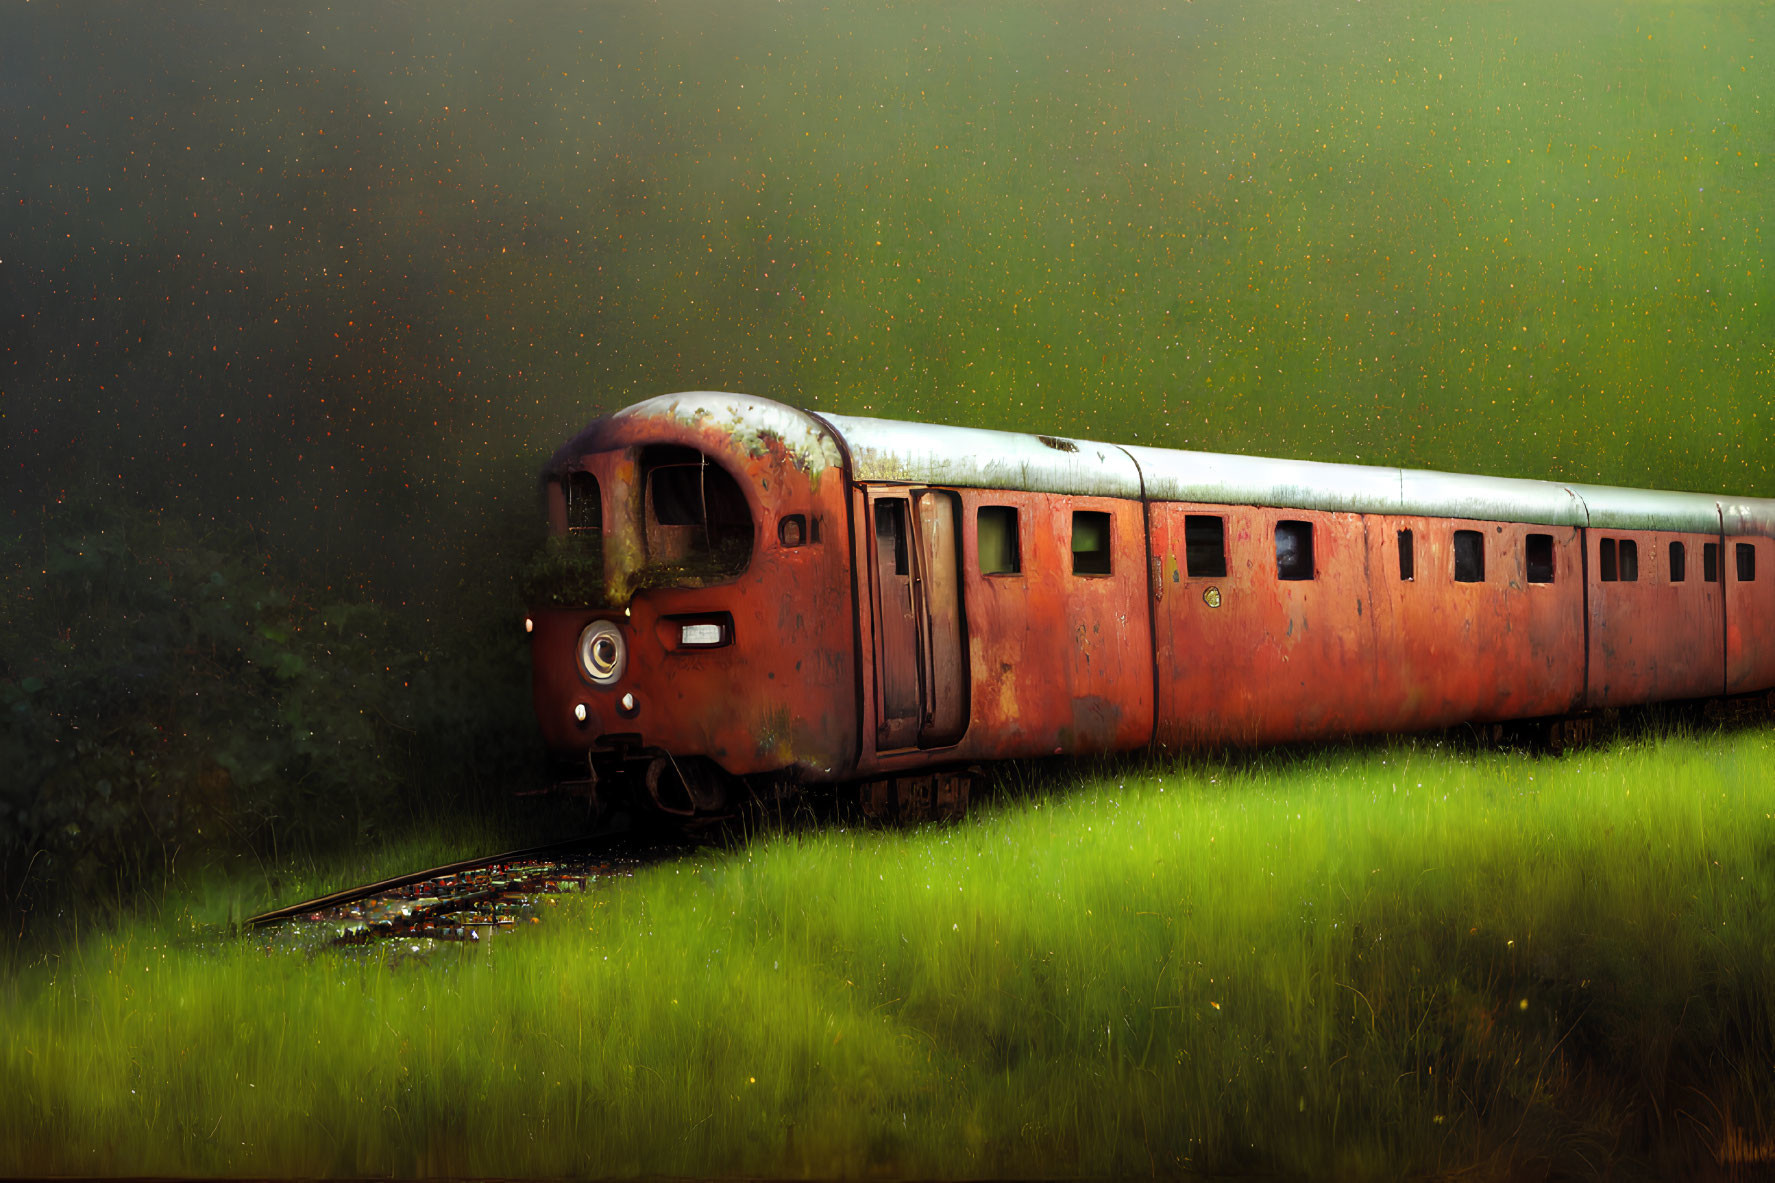 Rusty abandoned train car in green field under starry sky